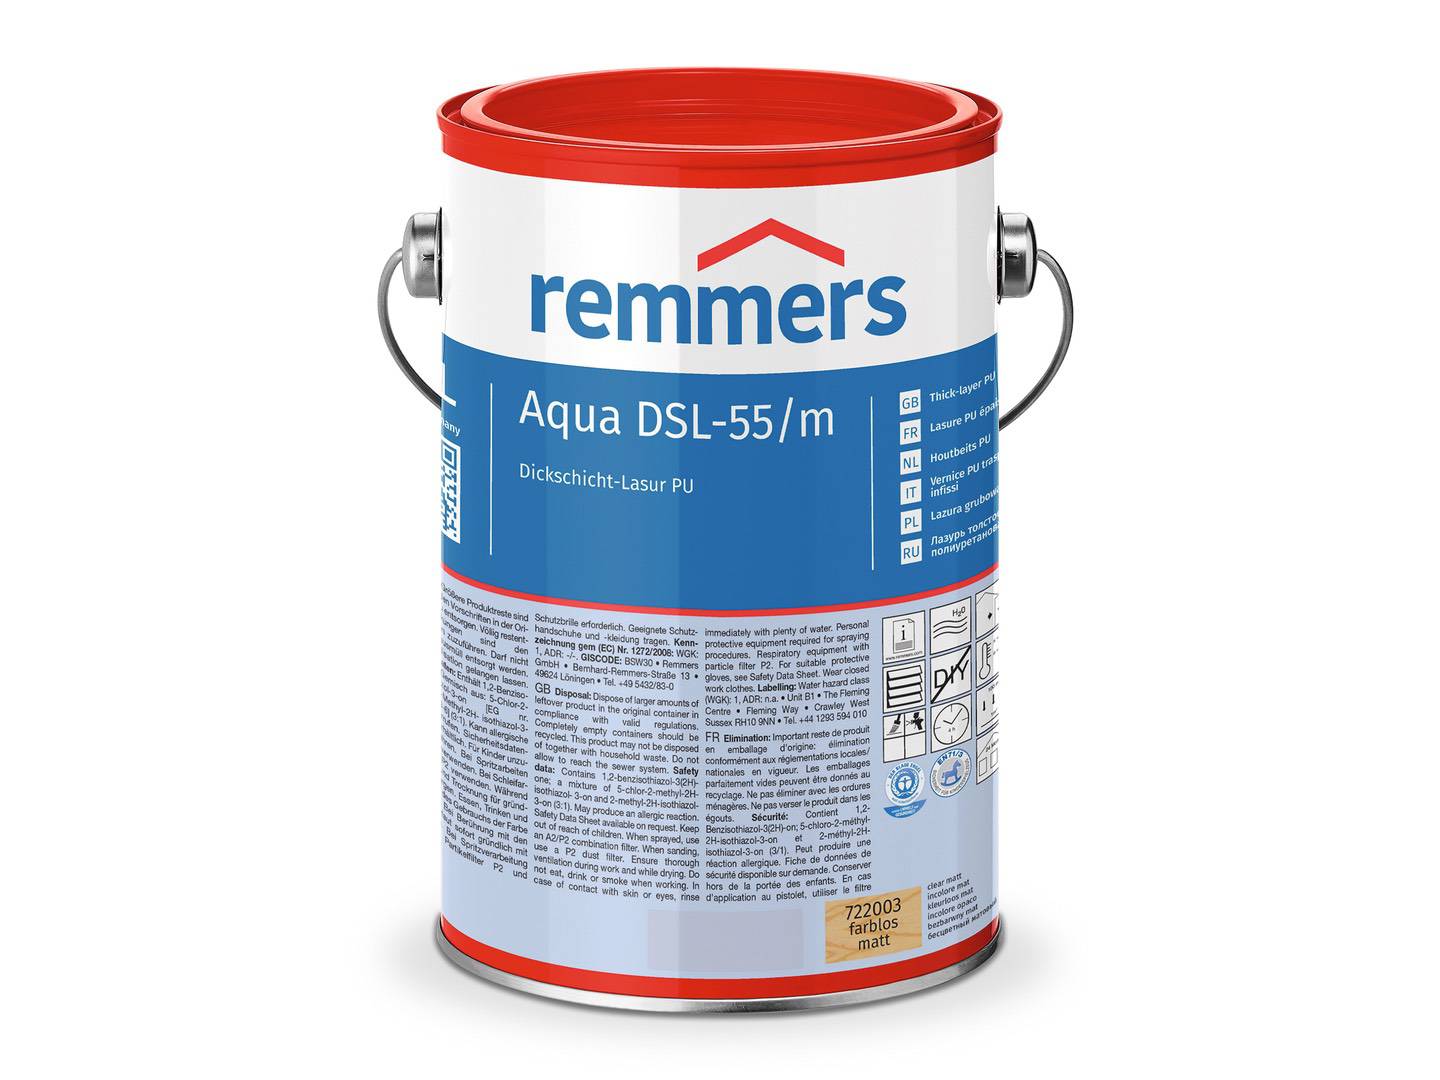 REMMERS Aqua DSL-55-Dickschicht-Lasur PU pinie/lärche (RC-260) seidenglänzend 2,50 l